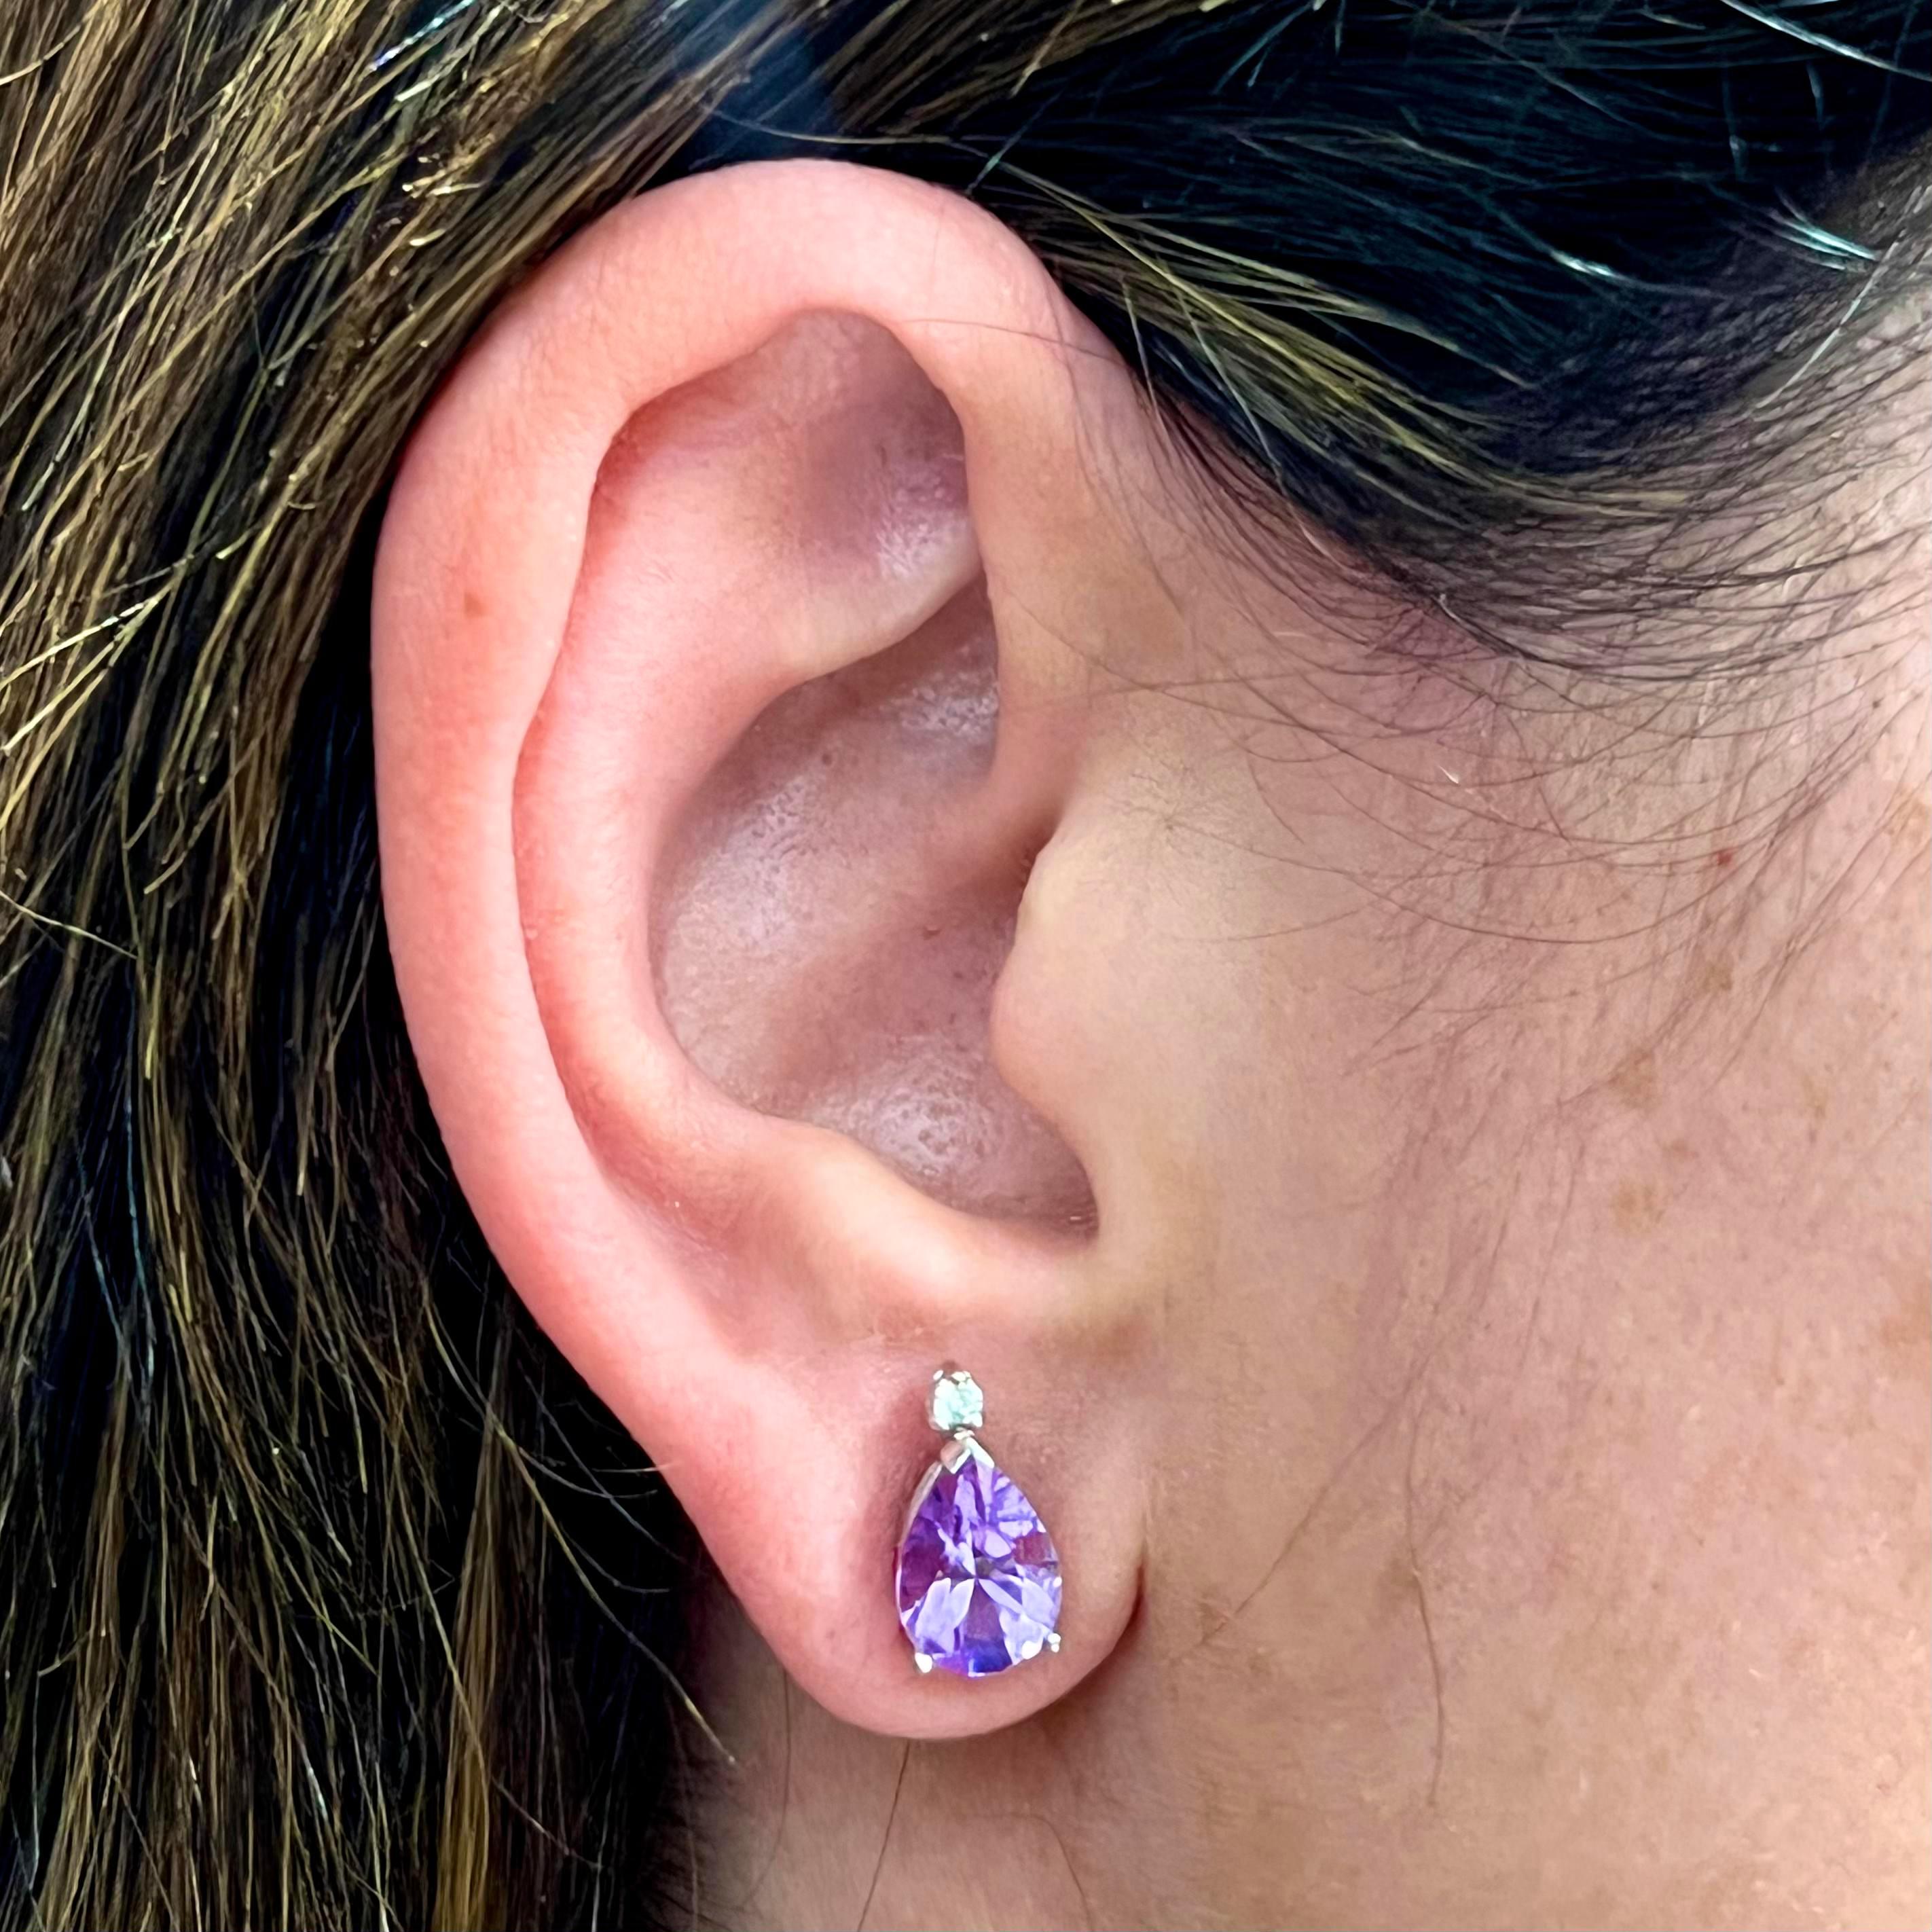 Natürliche Amethyst-Diamant-Ohrringe 14k Gold 3,71 TCW zertifiziert $2,950 210754

Dies ist ein einzigartiges, maßgeschneidertes, glamouröses Schmuckstück!

Nichts sagt mehr 